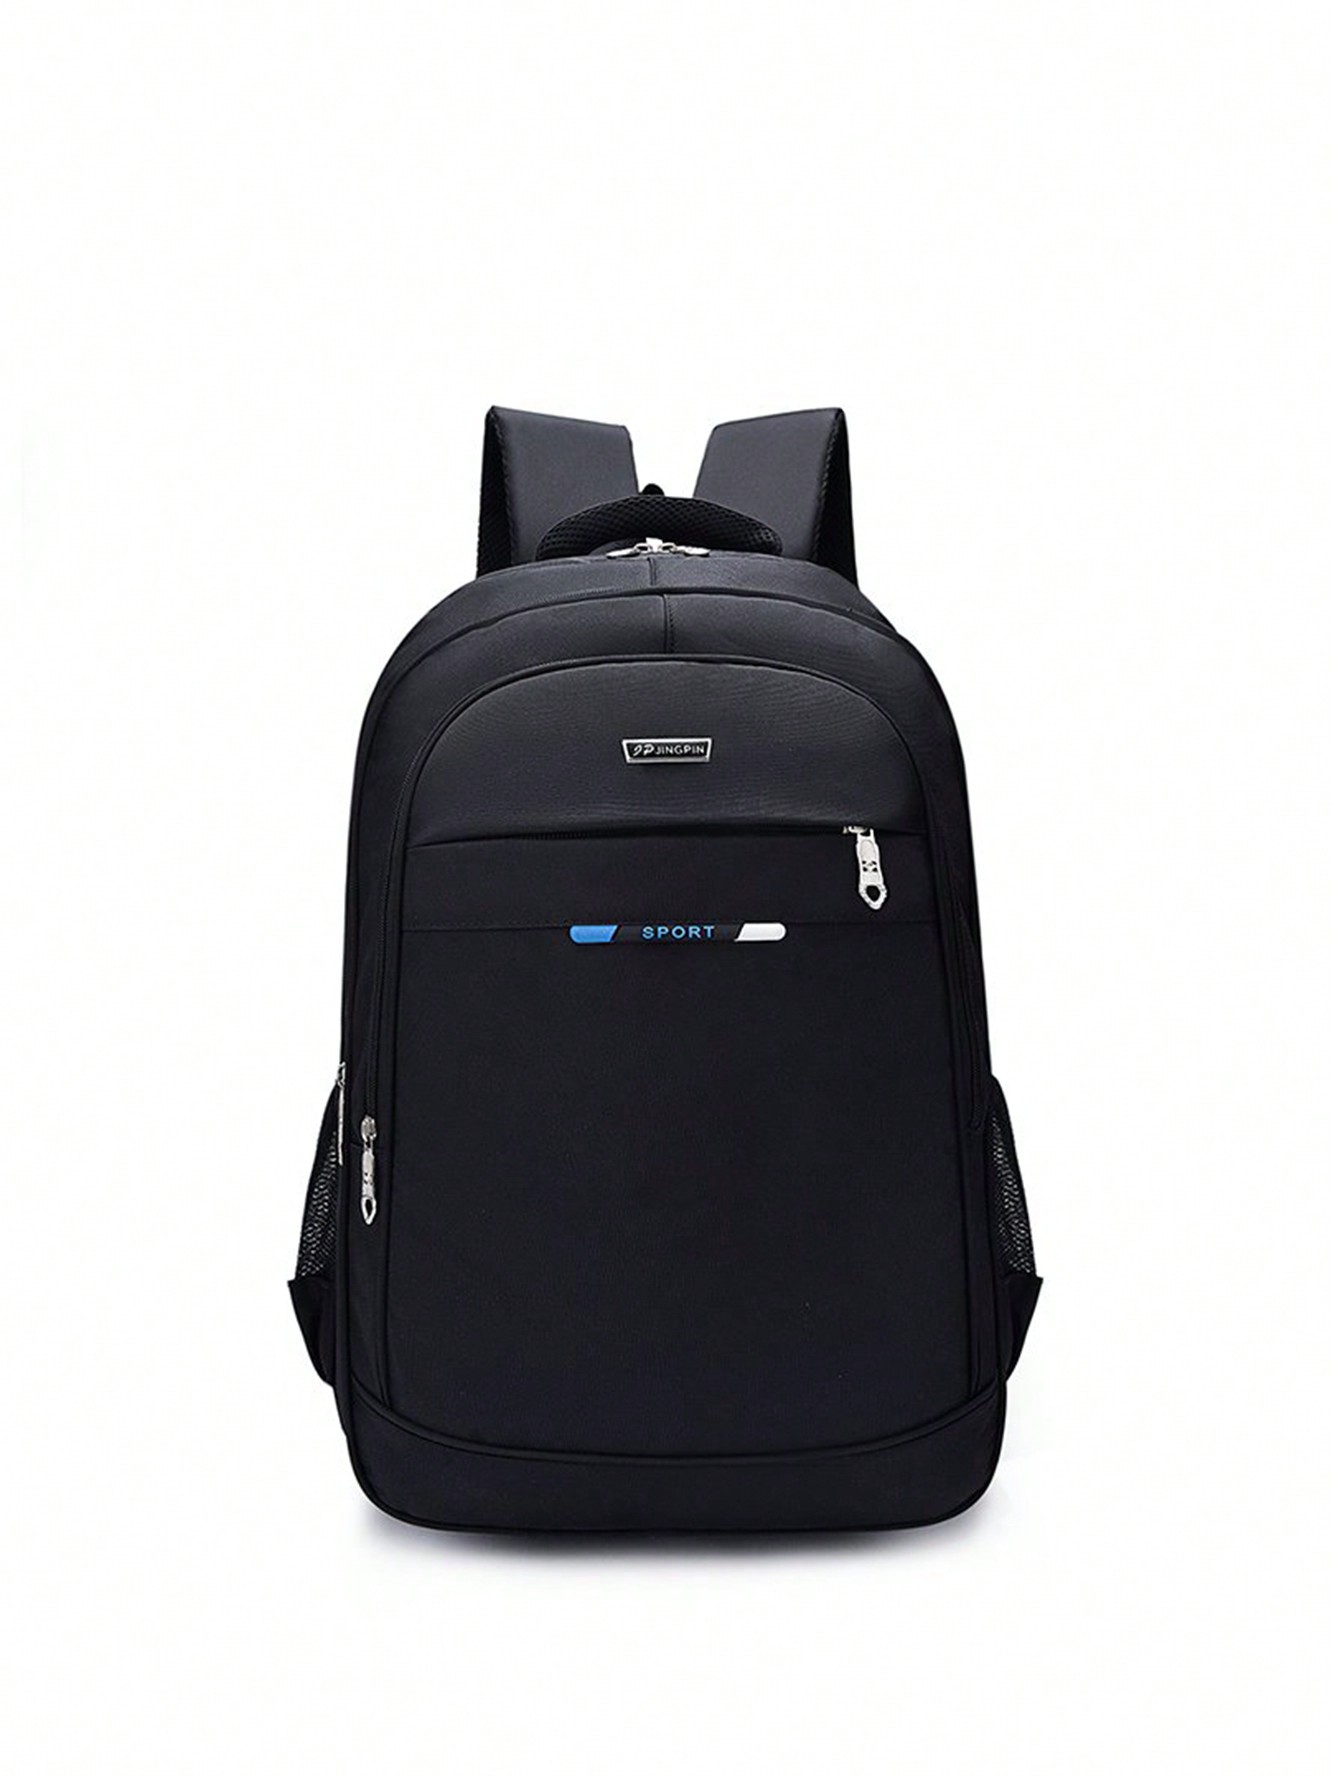 Рюкзак для мужчин, синий мужской повседневный спортивный компьютерный рюкзак большой вместимости белый